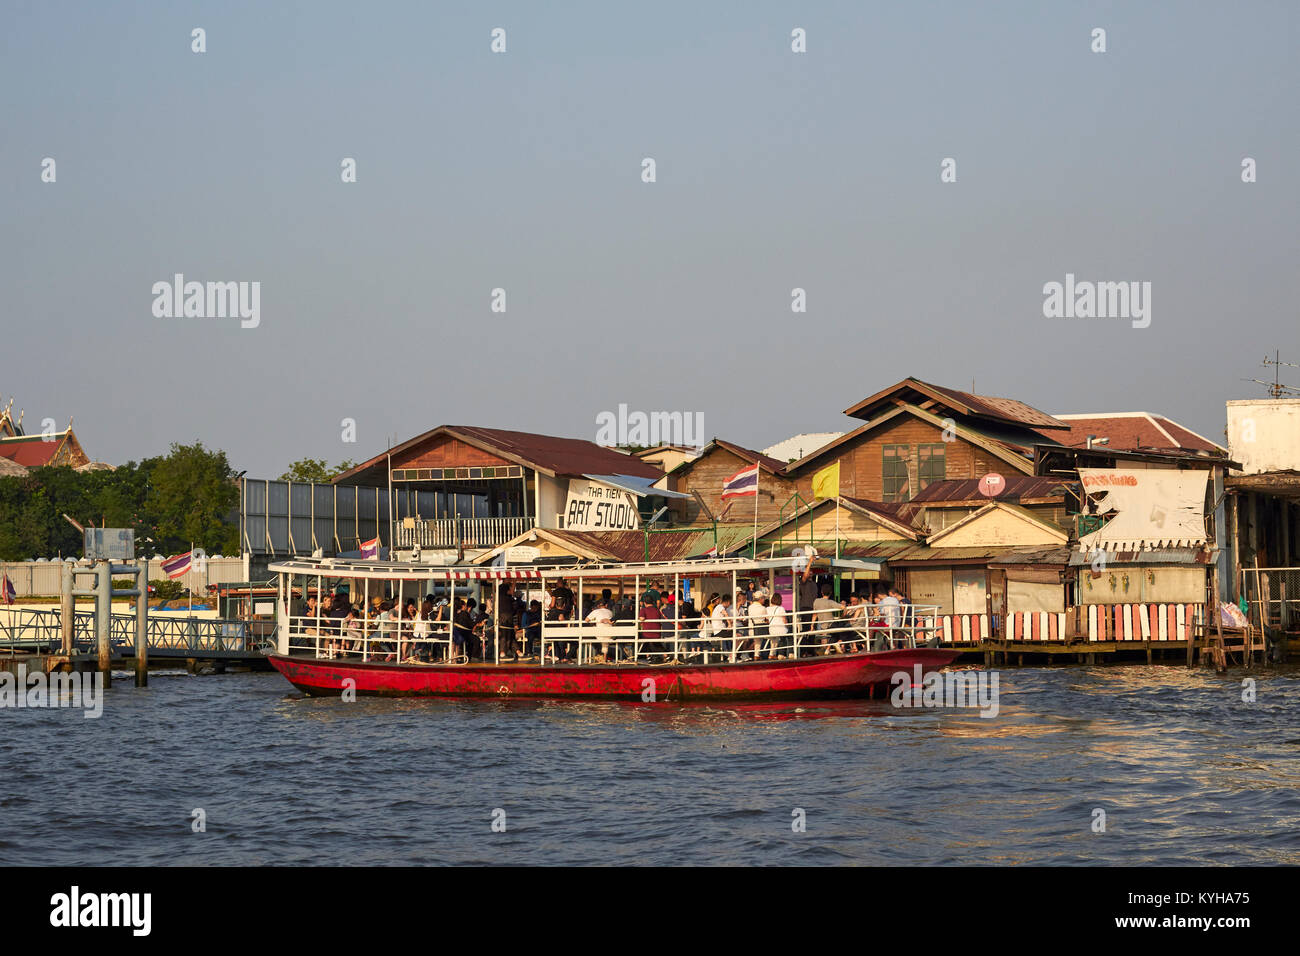 The Chao Phraya River in Bangkok Thailand Stock Photo